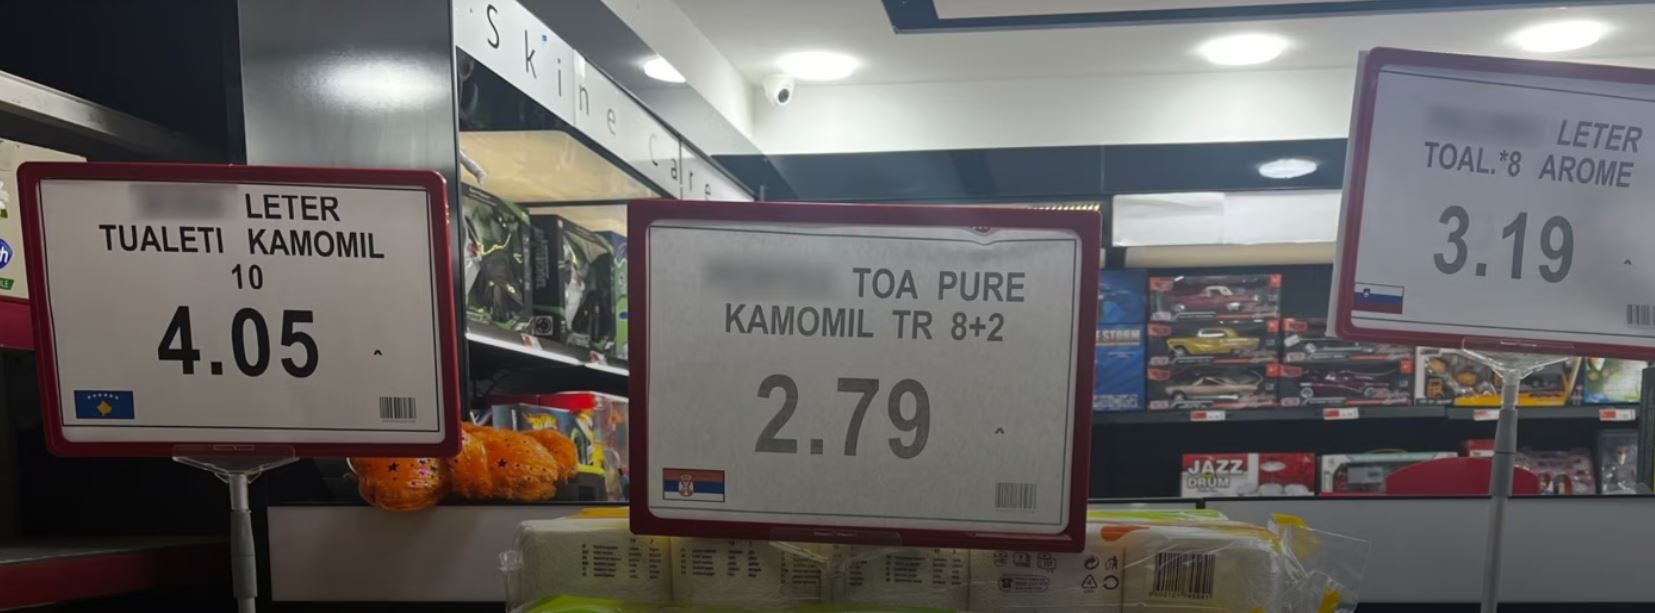 Më shtrenjtë prodhimet “Made in Kosova” se ato të huajat